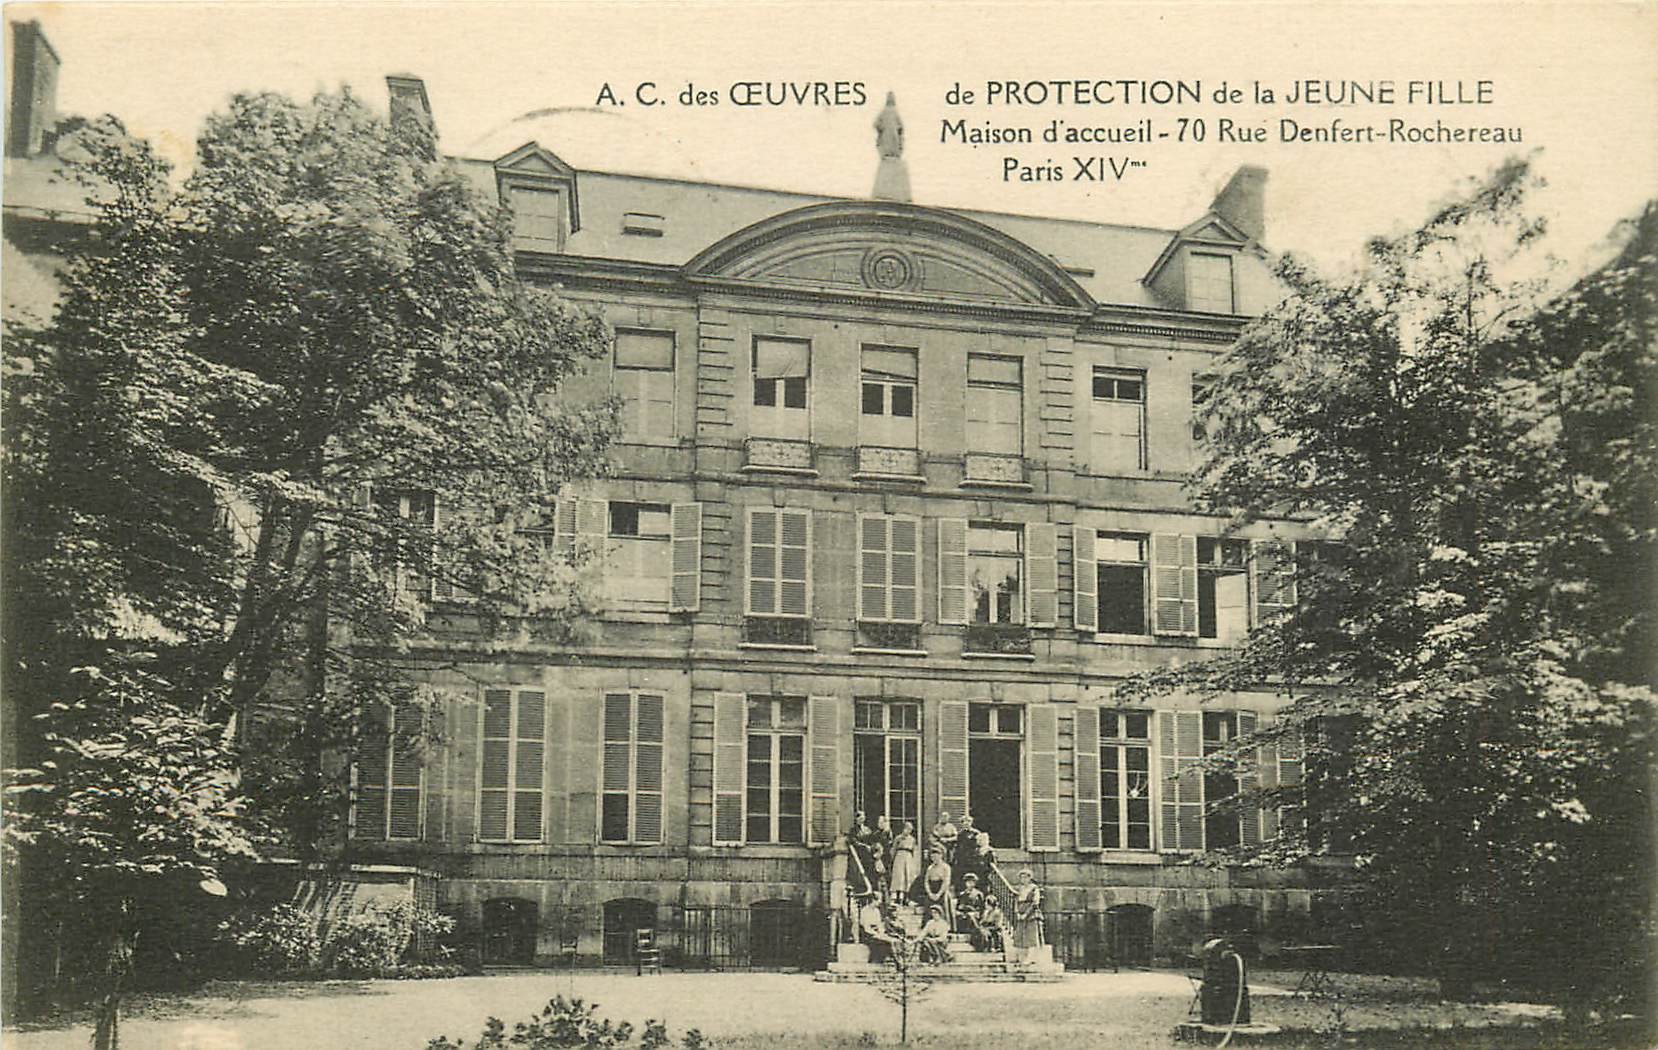 PARIS IV. Oeuvres Protection de la Jeune Fille au 70 rue Denfert-Rochereau 1941